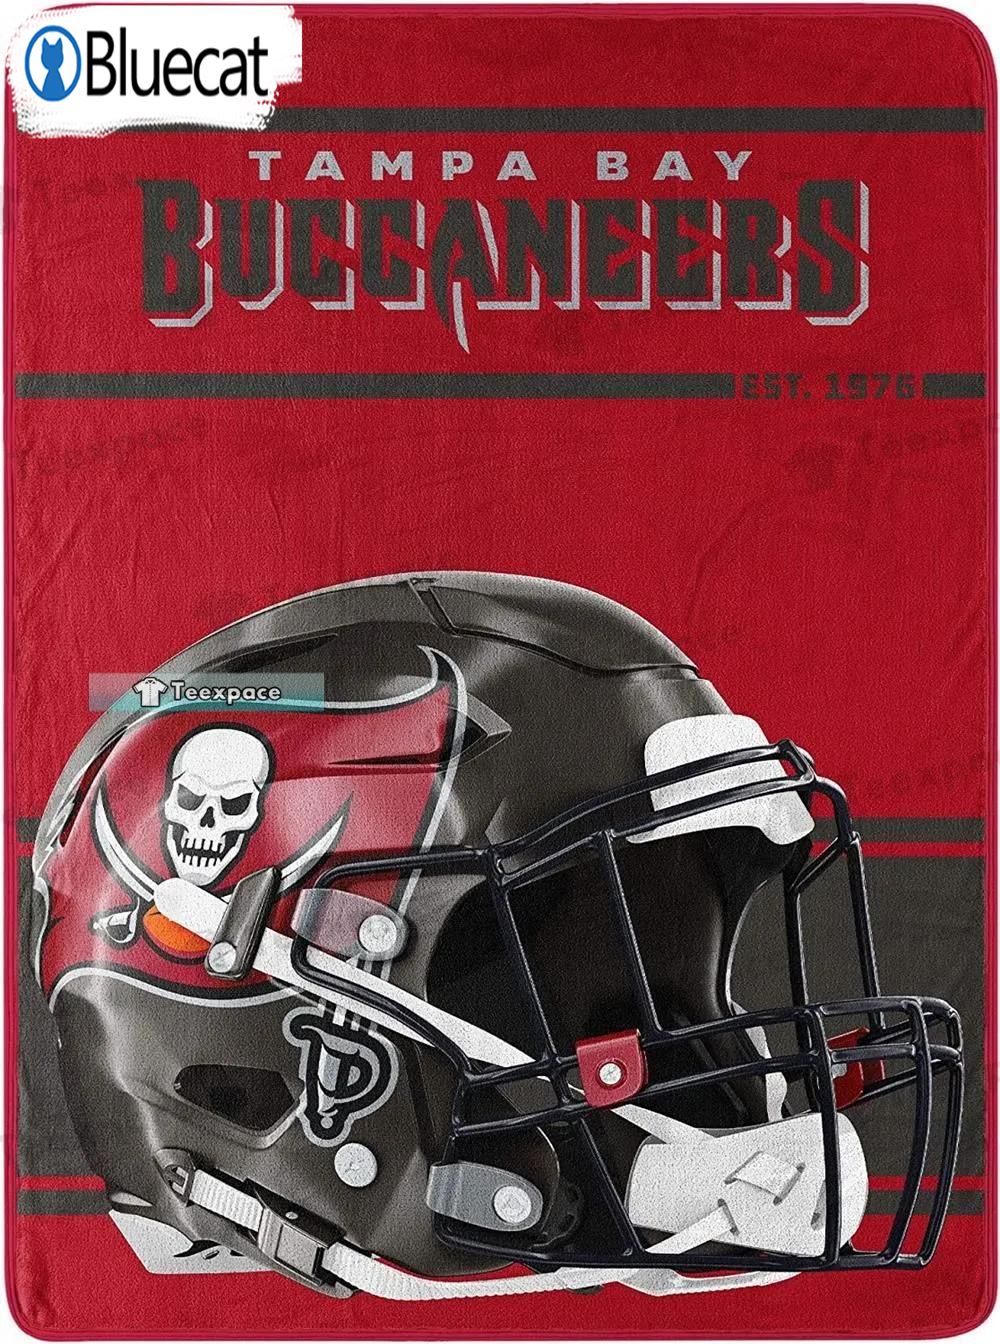 Buccaneers Football Helmet Red Blanket 